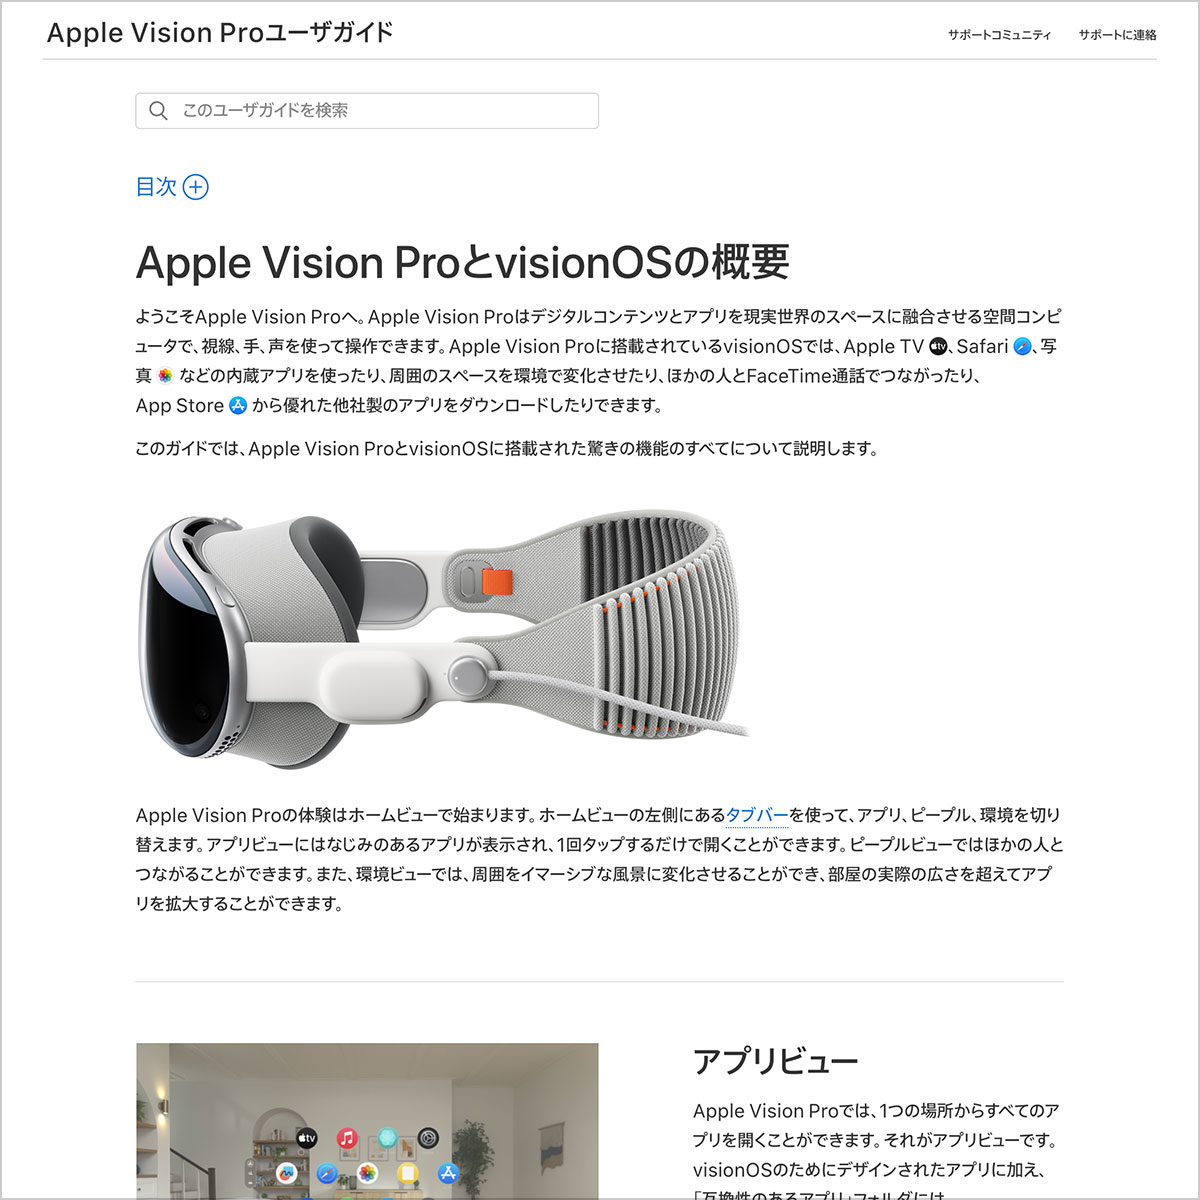 Apple Vision Proユーザガイド